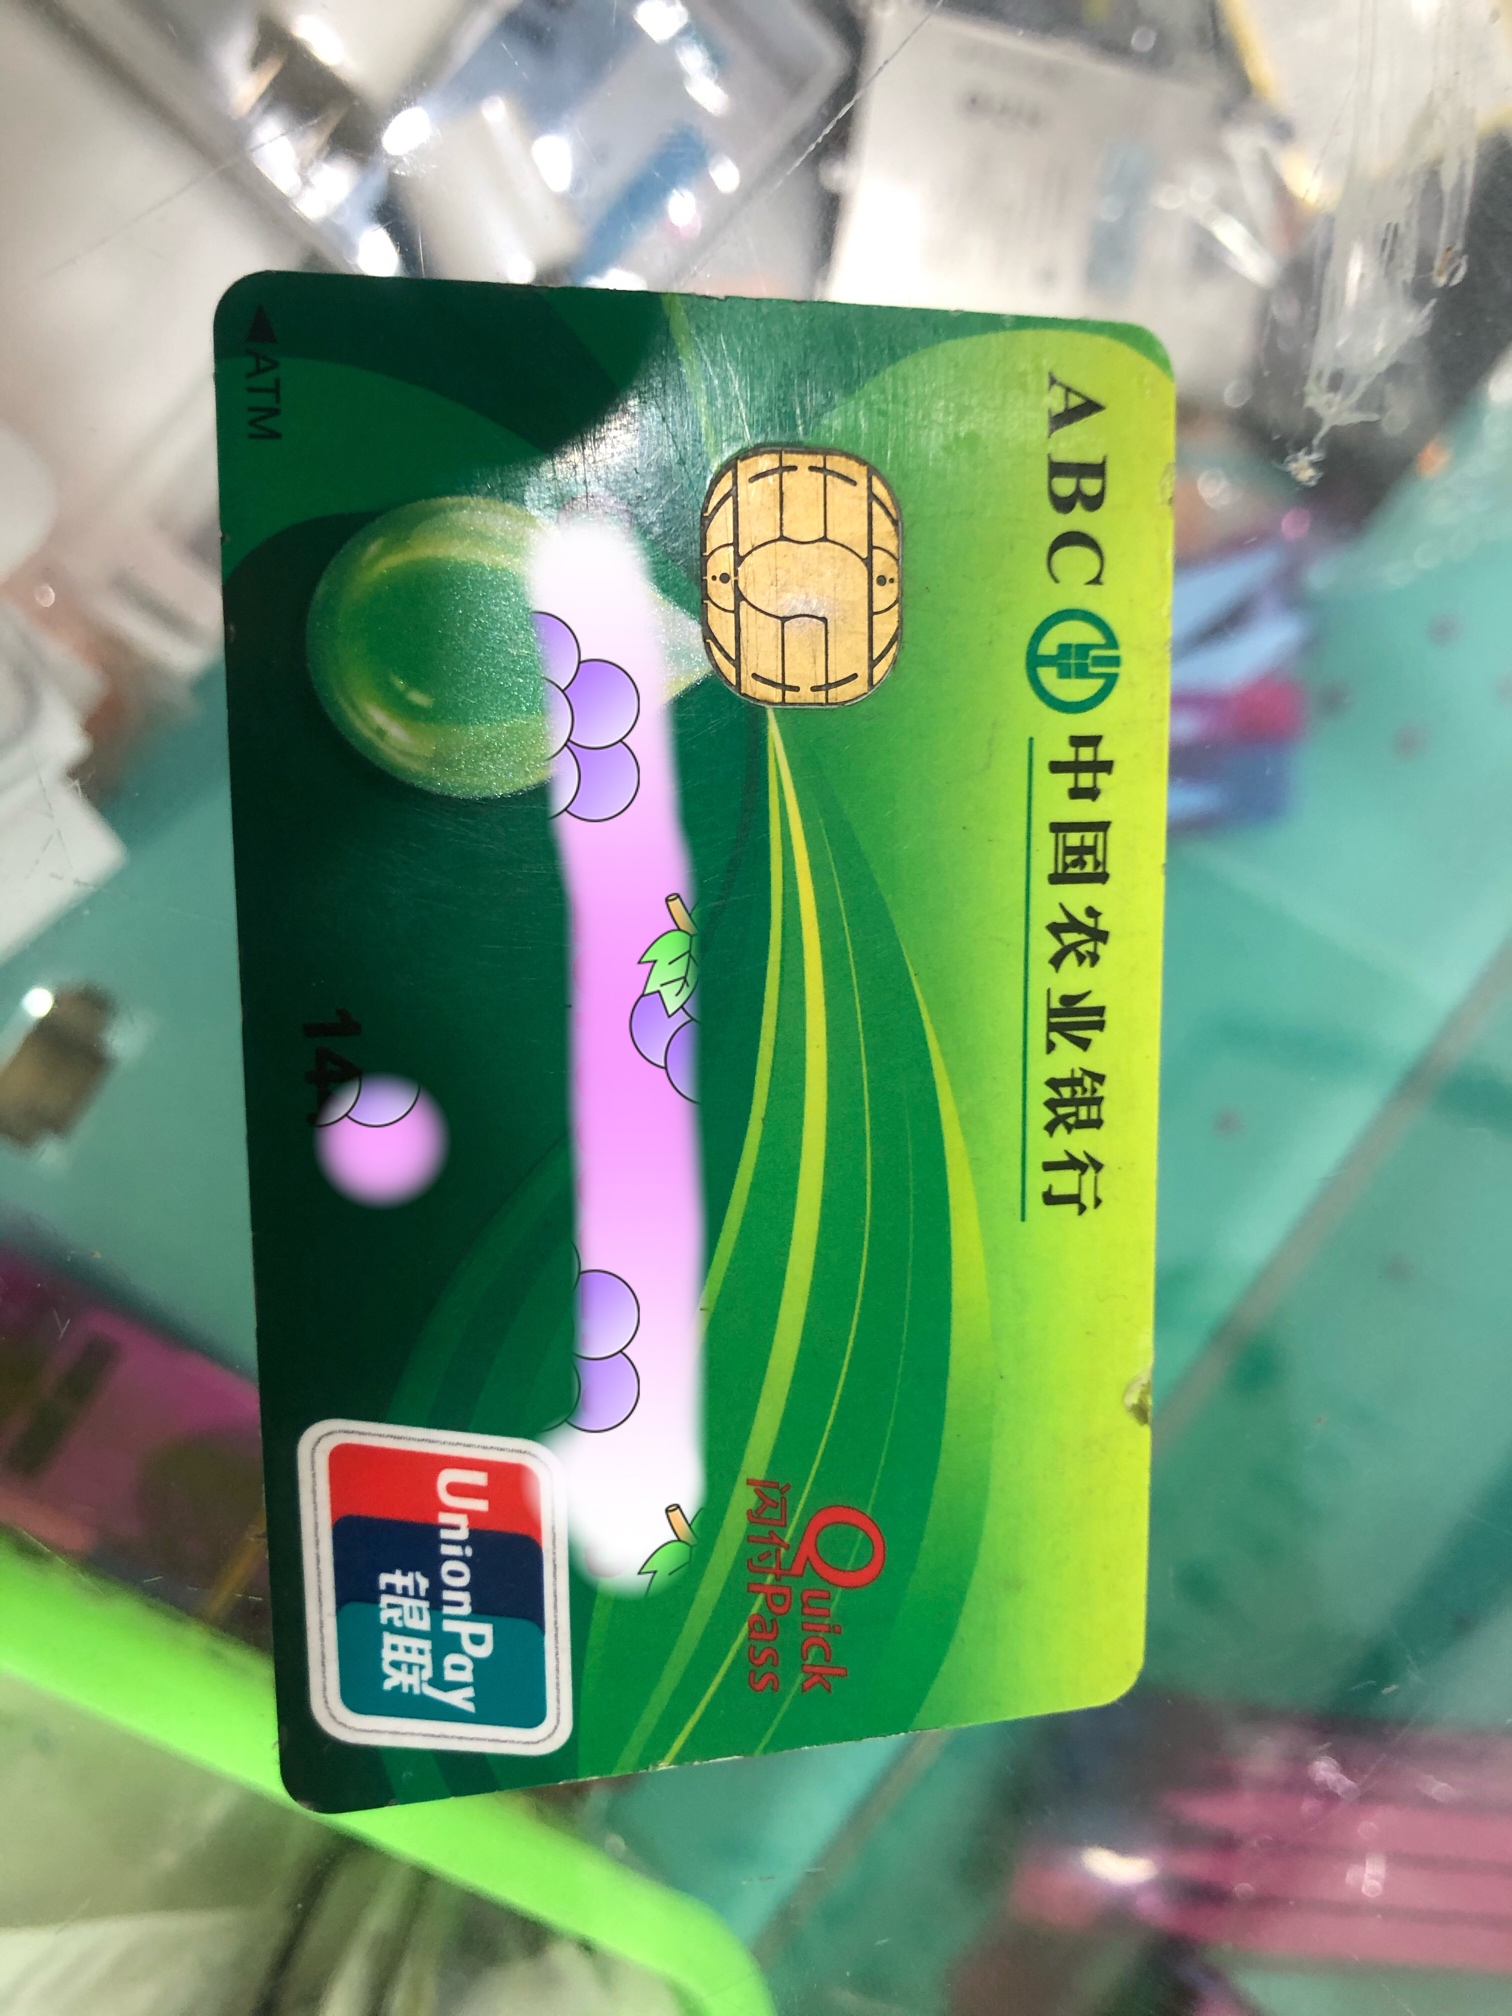 农业银行卡绿色图片